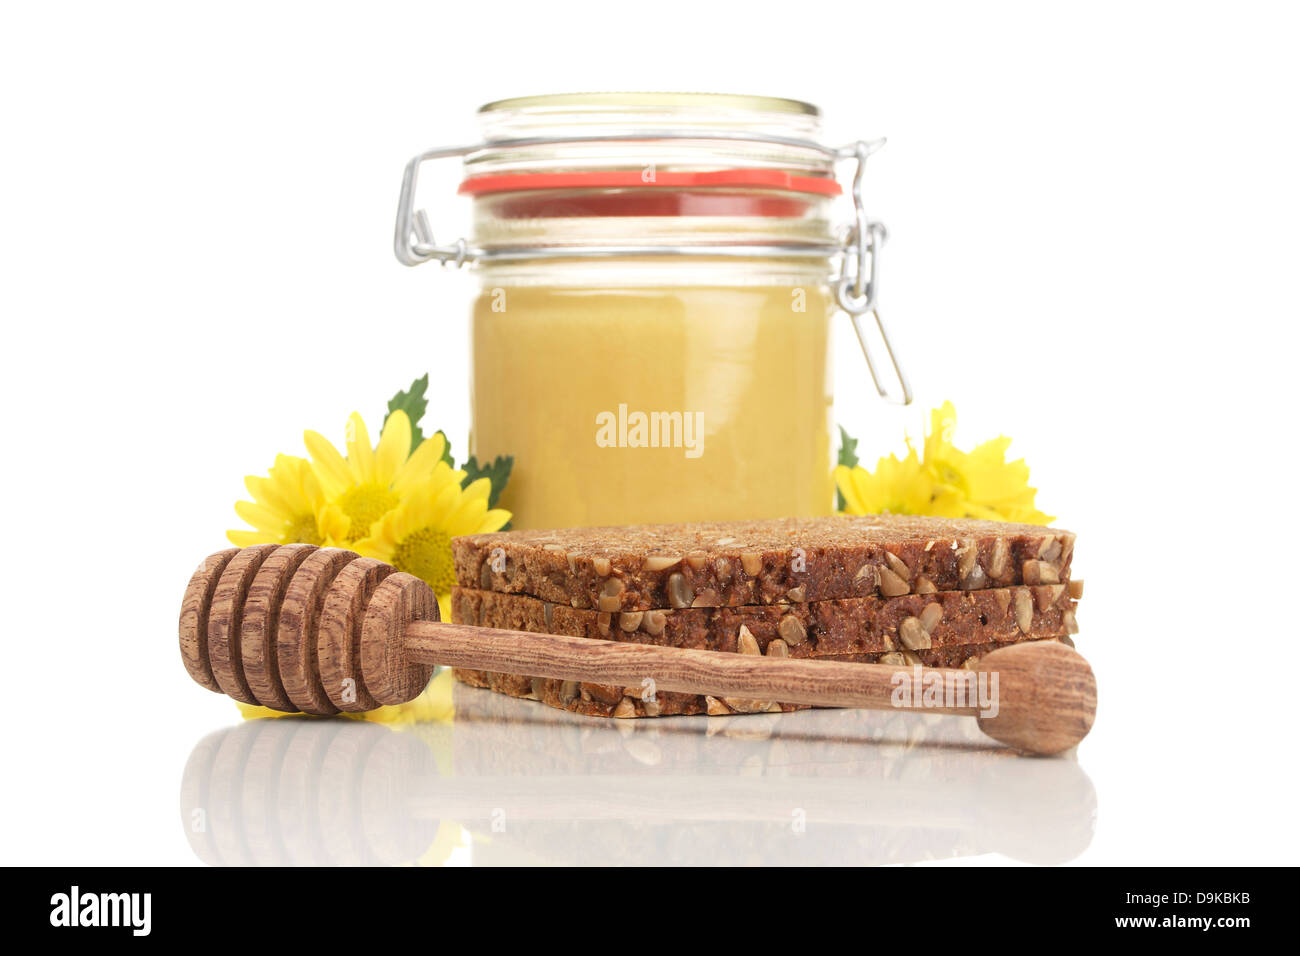 Honig-Glas mit Vollkornbrot und Löffel Honig, Honig-Glas mit Vollkornbrot und Honig-Löffel Stockfoto